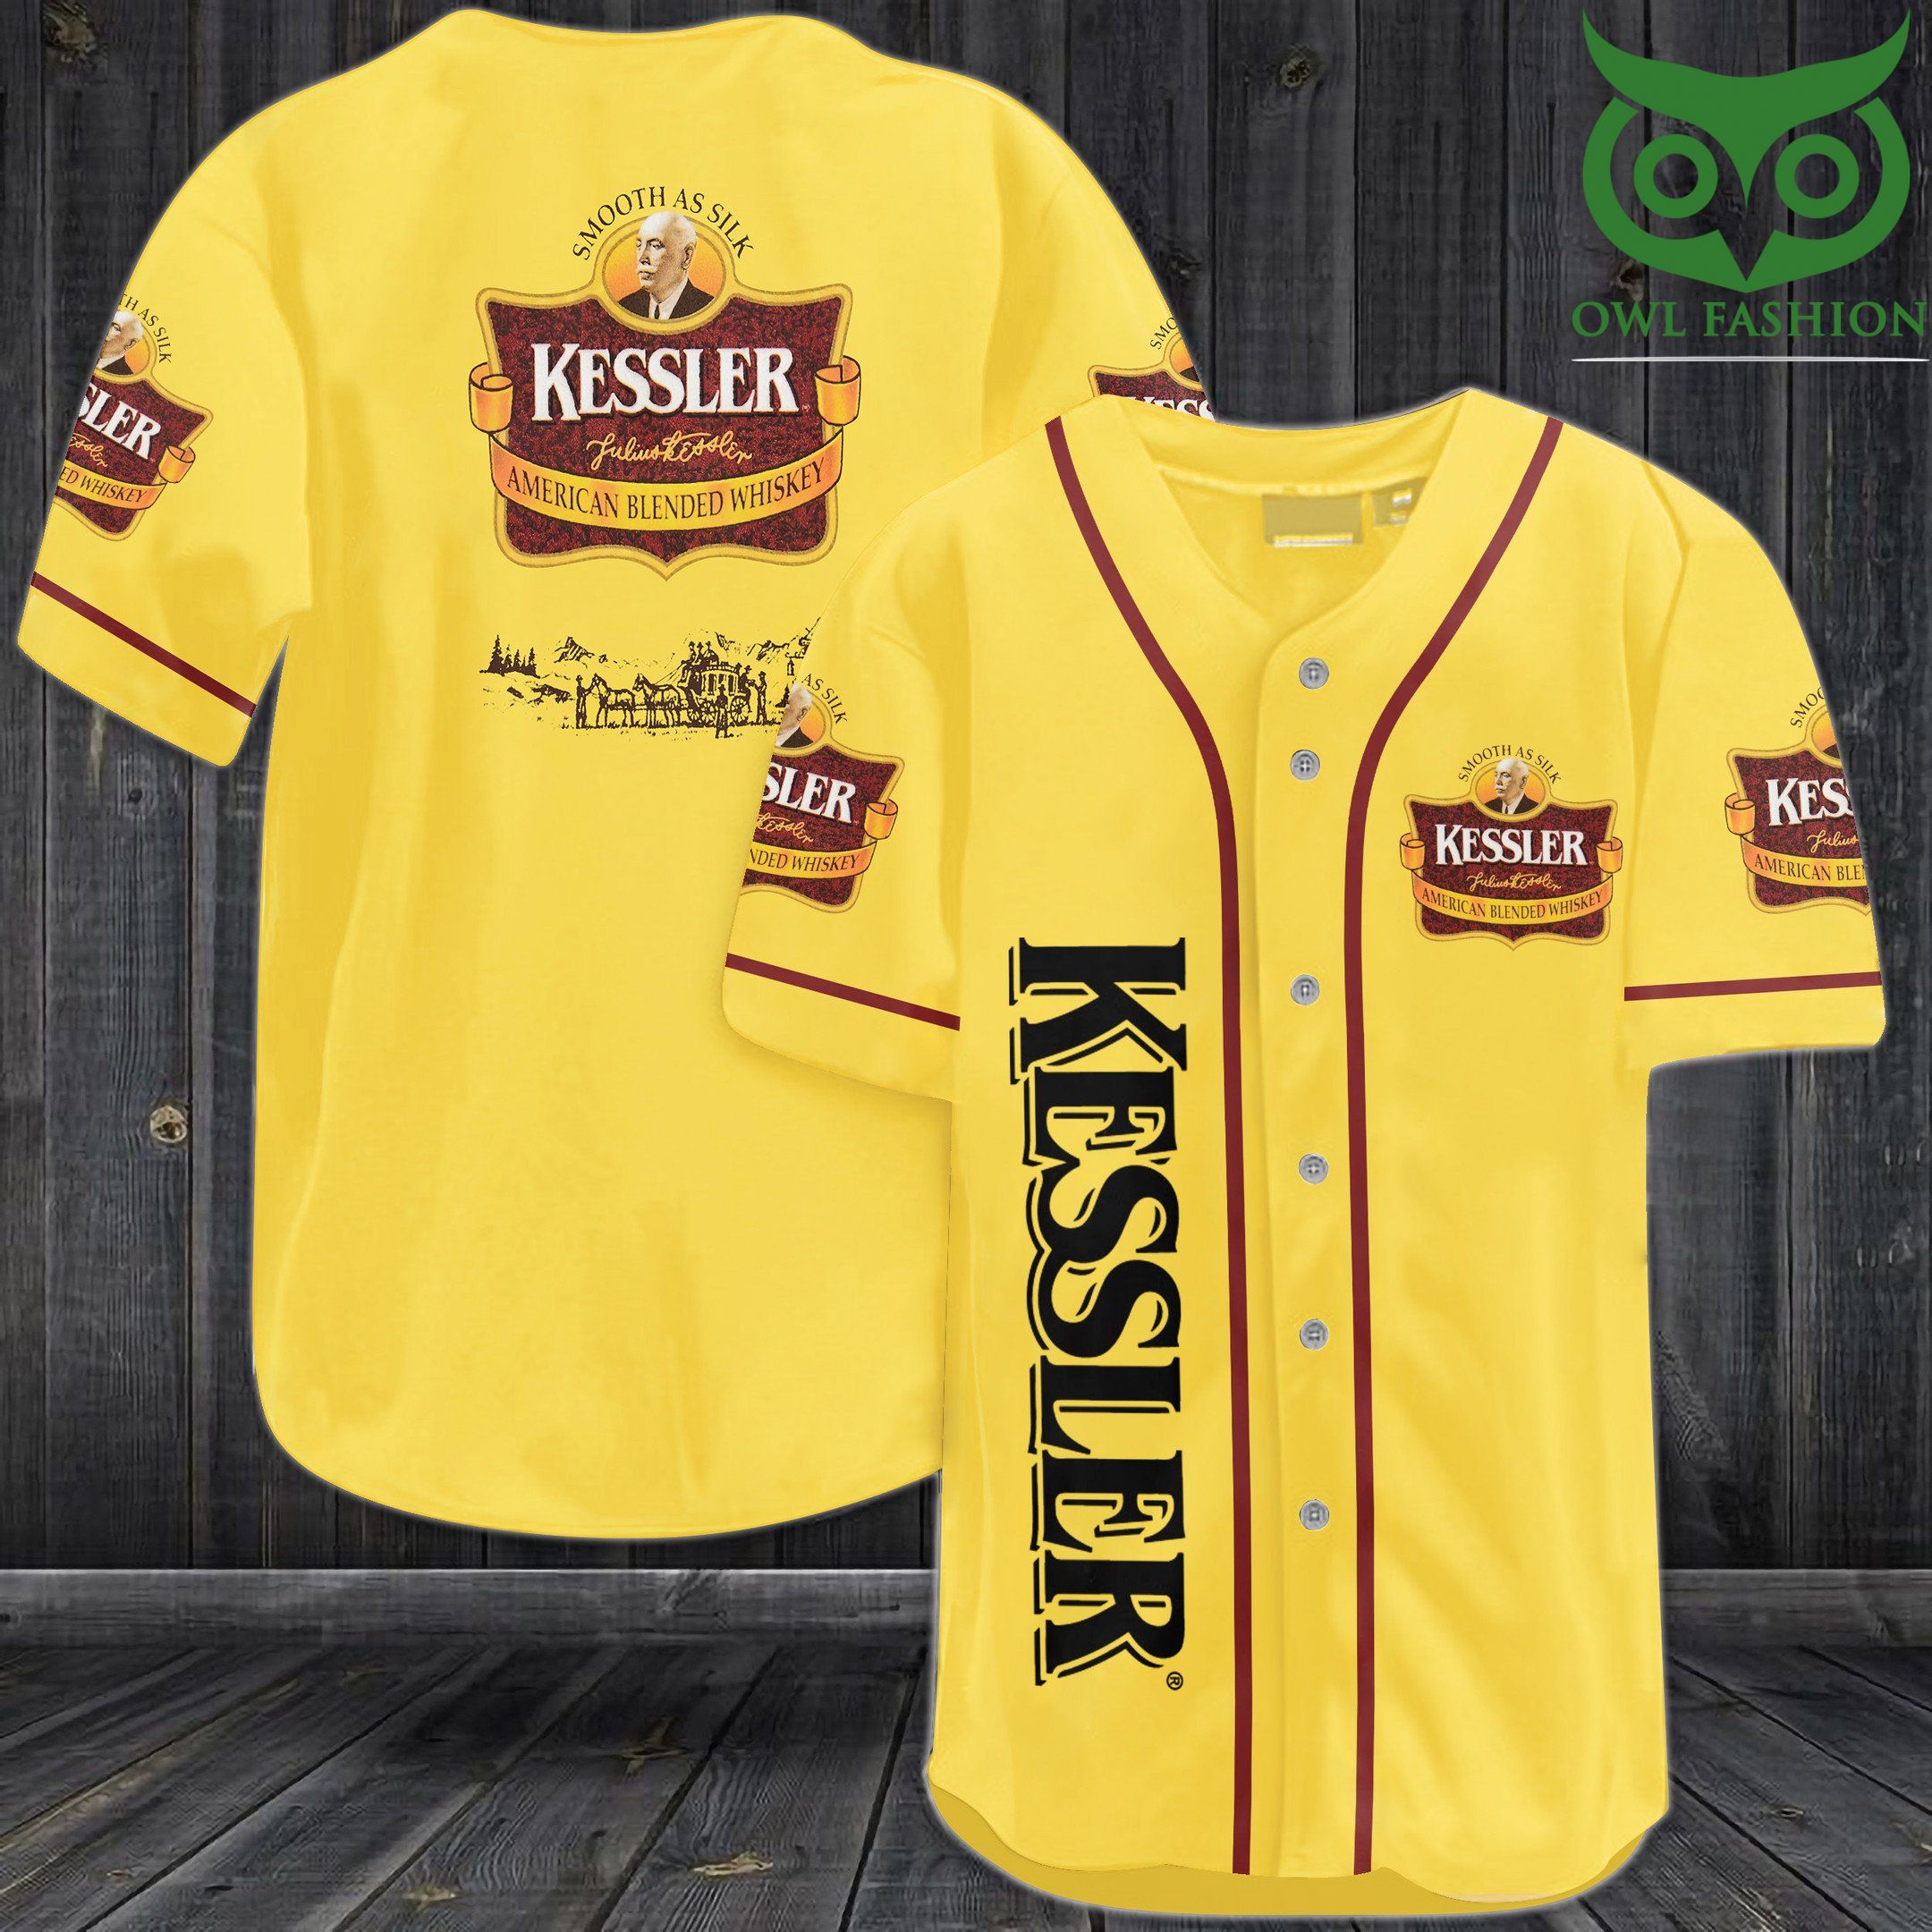 Kessler American Blened Whiskey Baseball Jersey Shirt